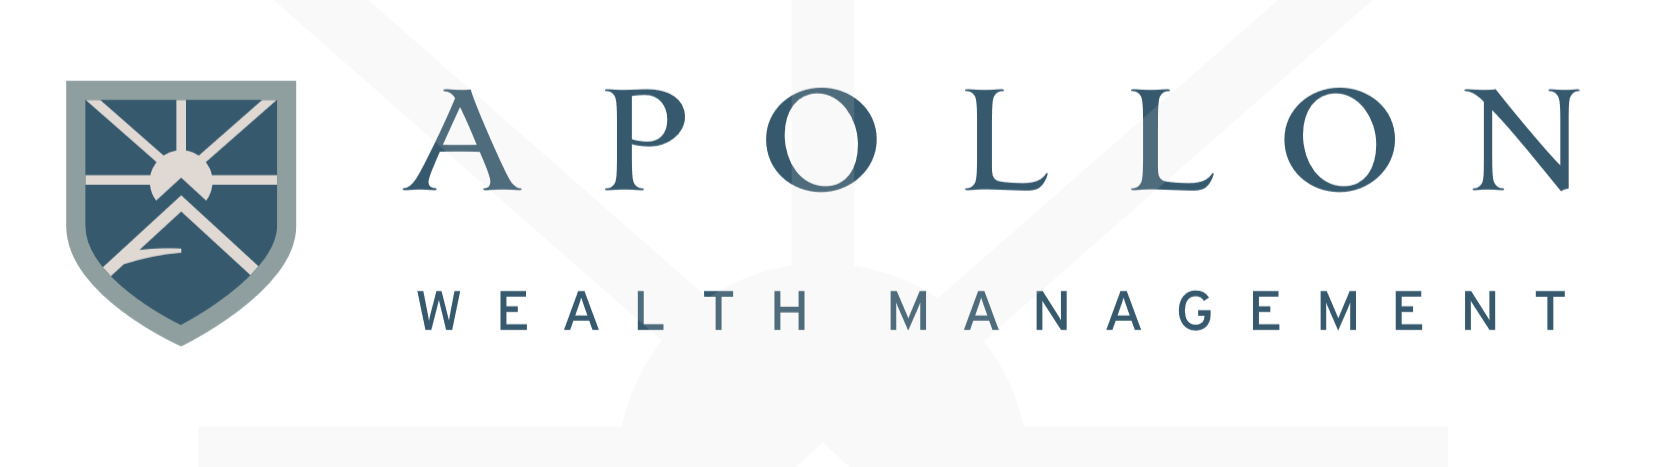 Apollon Wealth Management